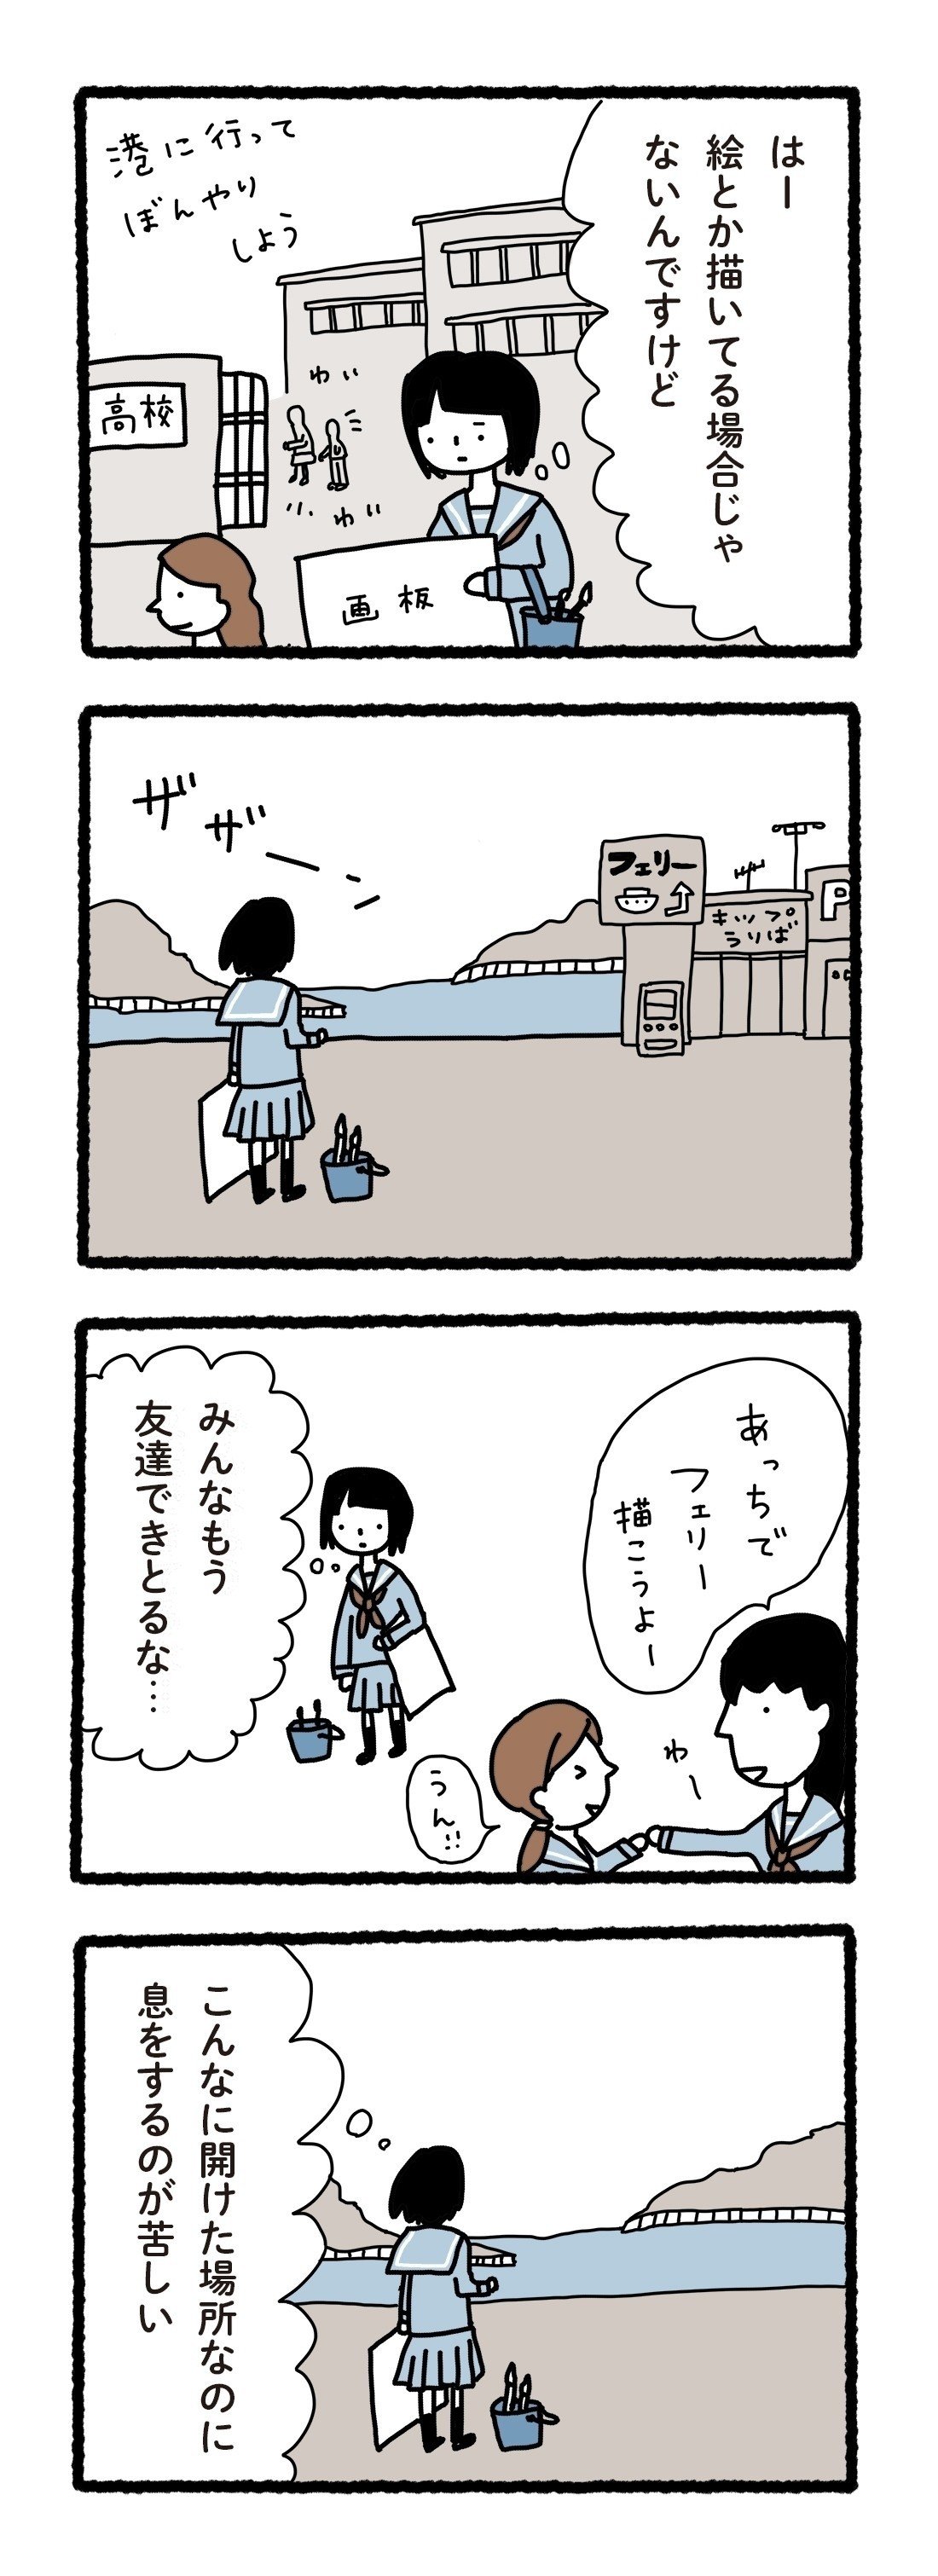 科学漫画001_11岡山